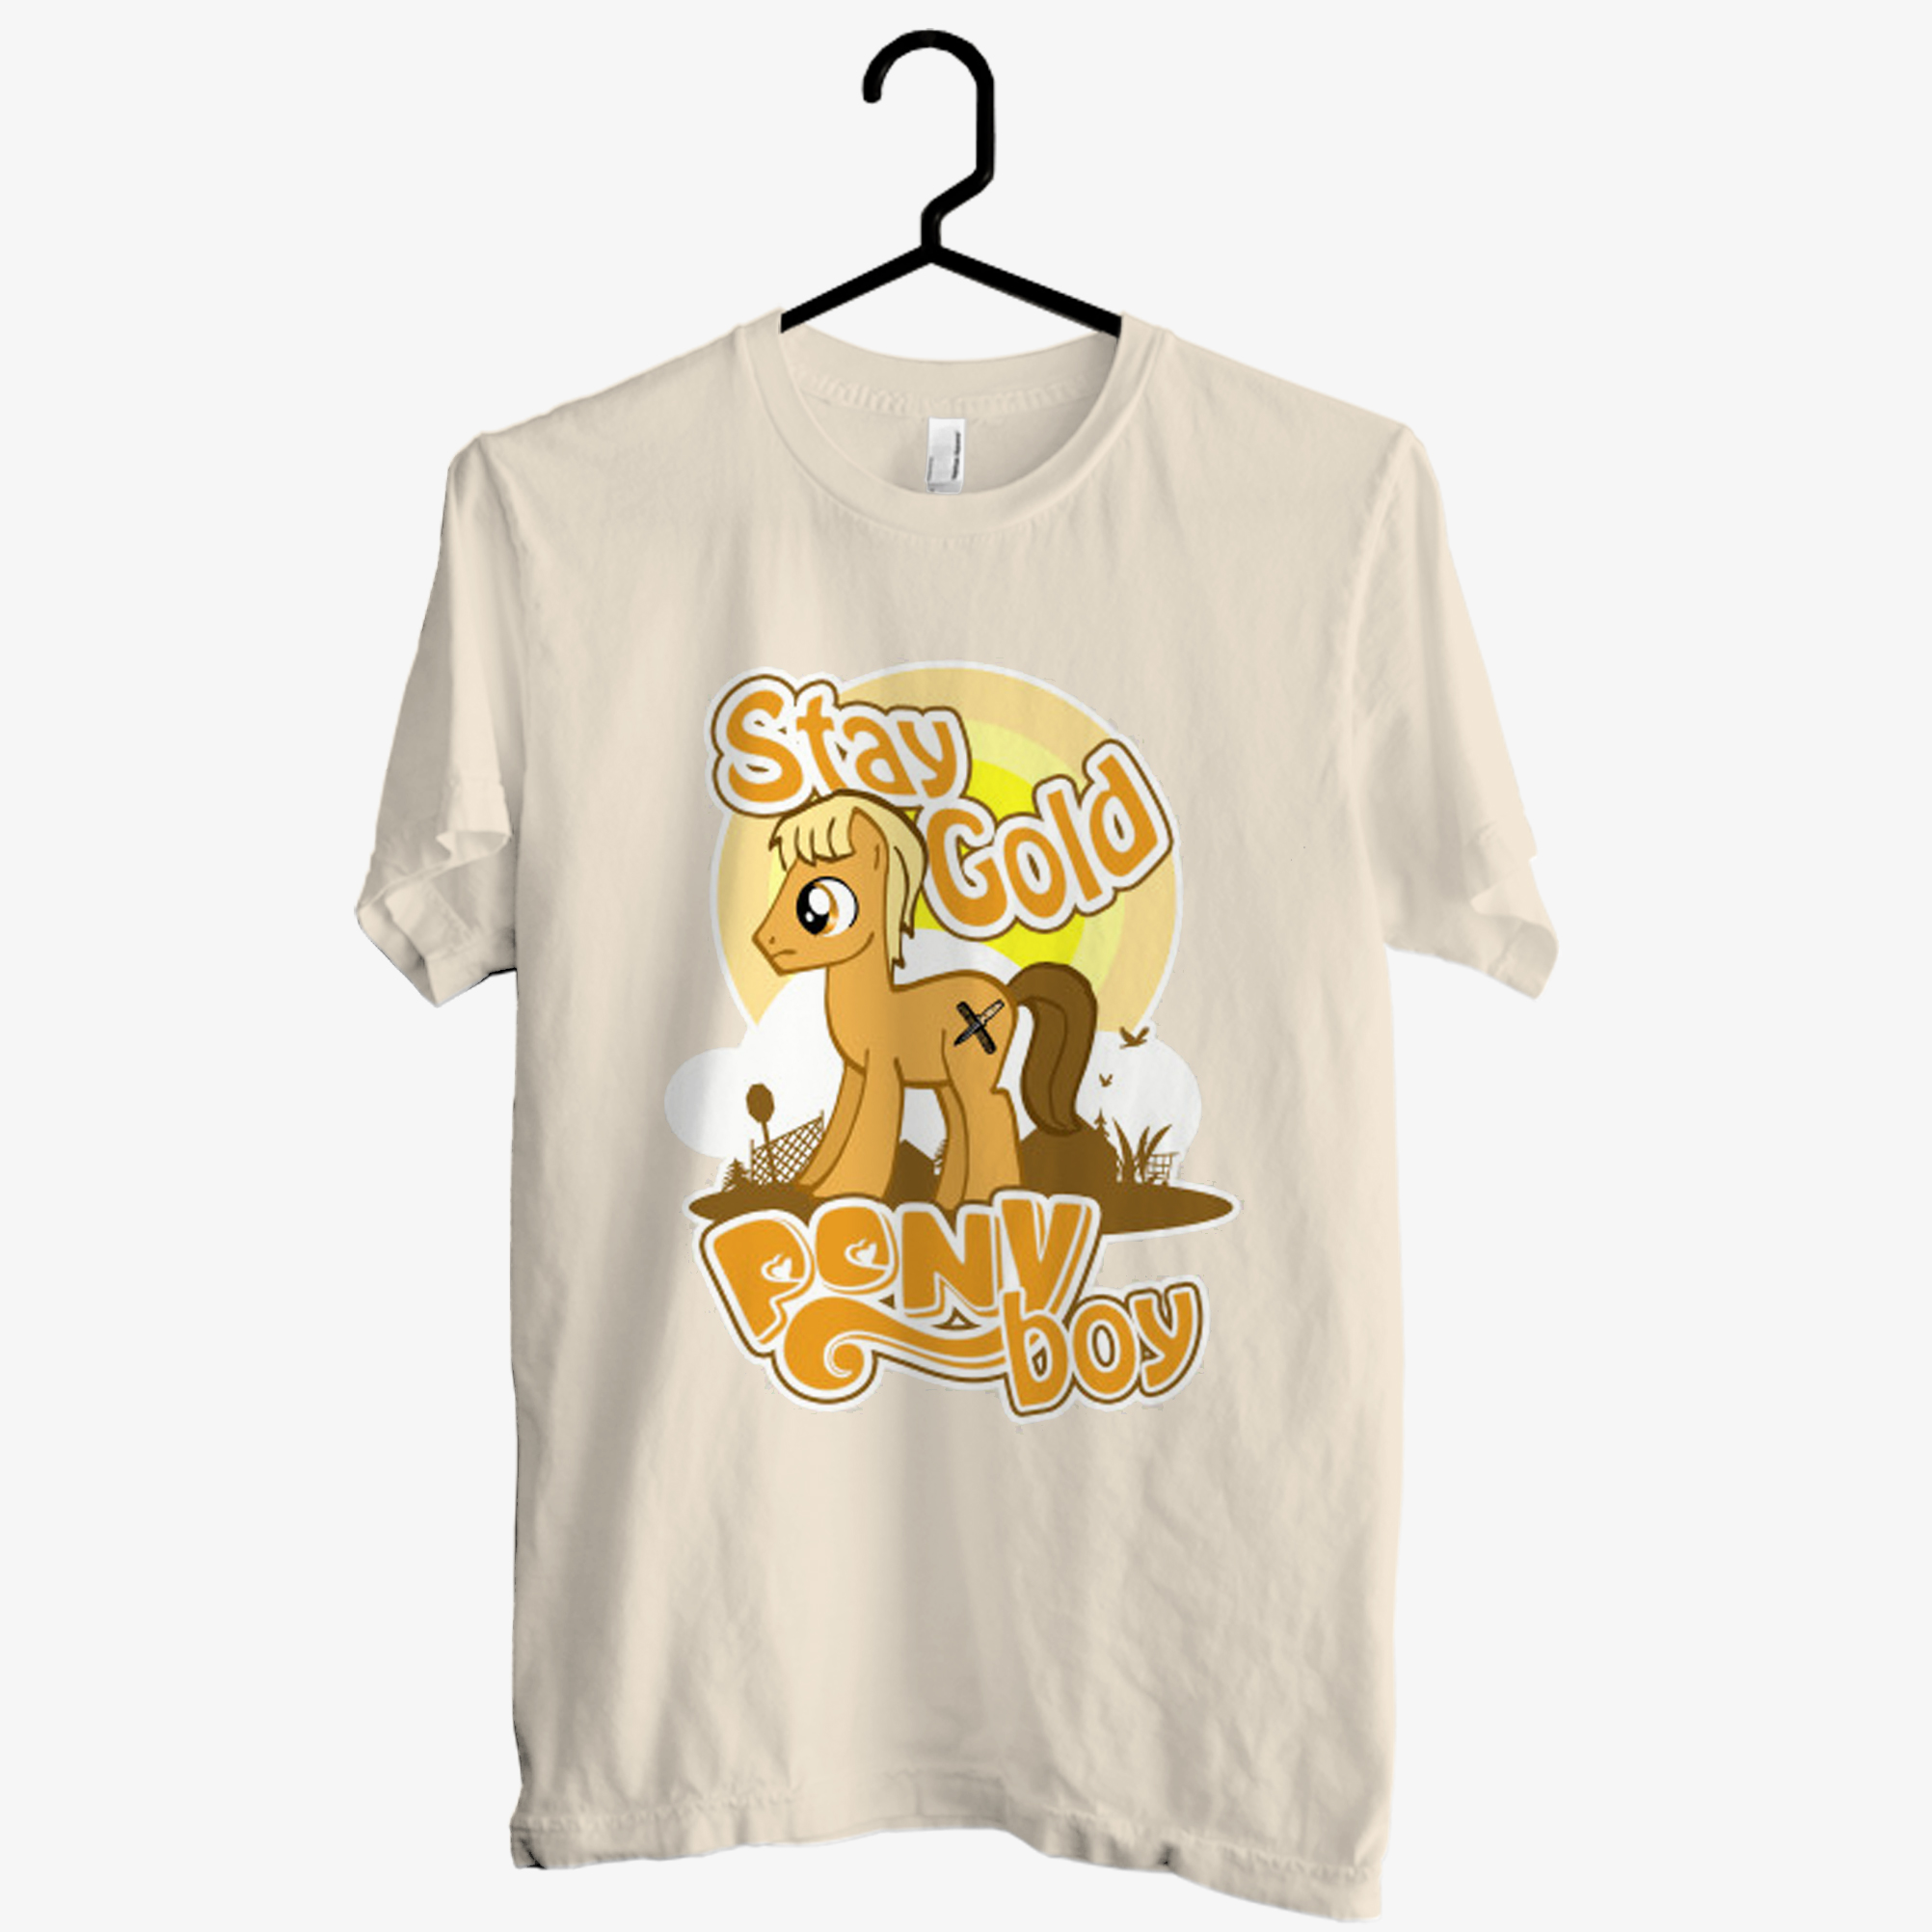 Stay Gold Pony Boy T shirt